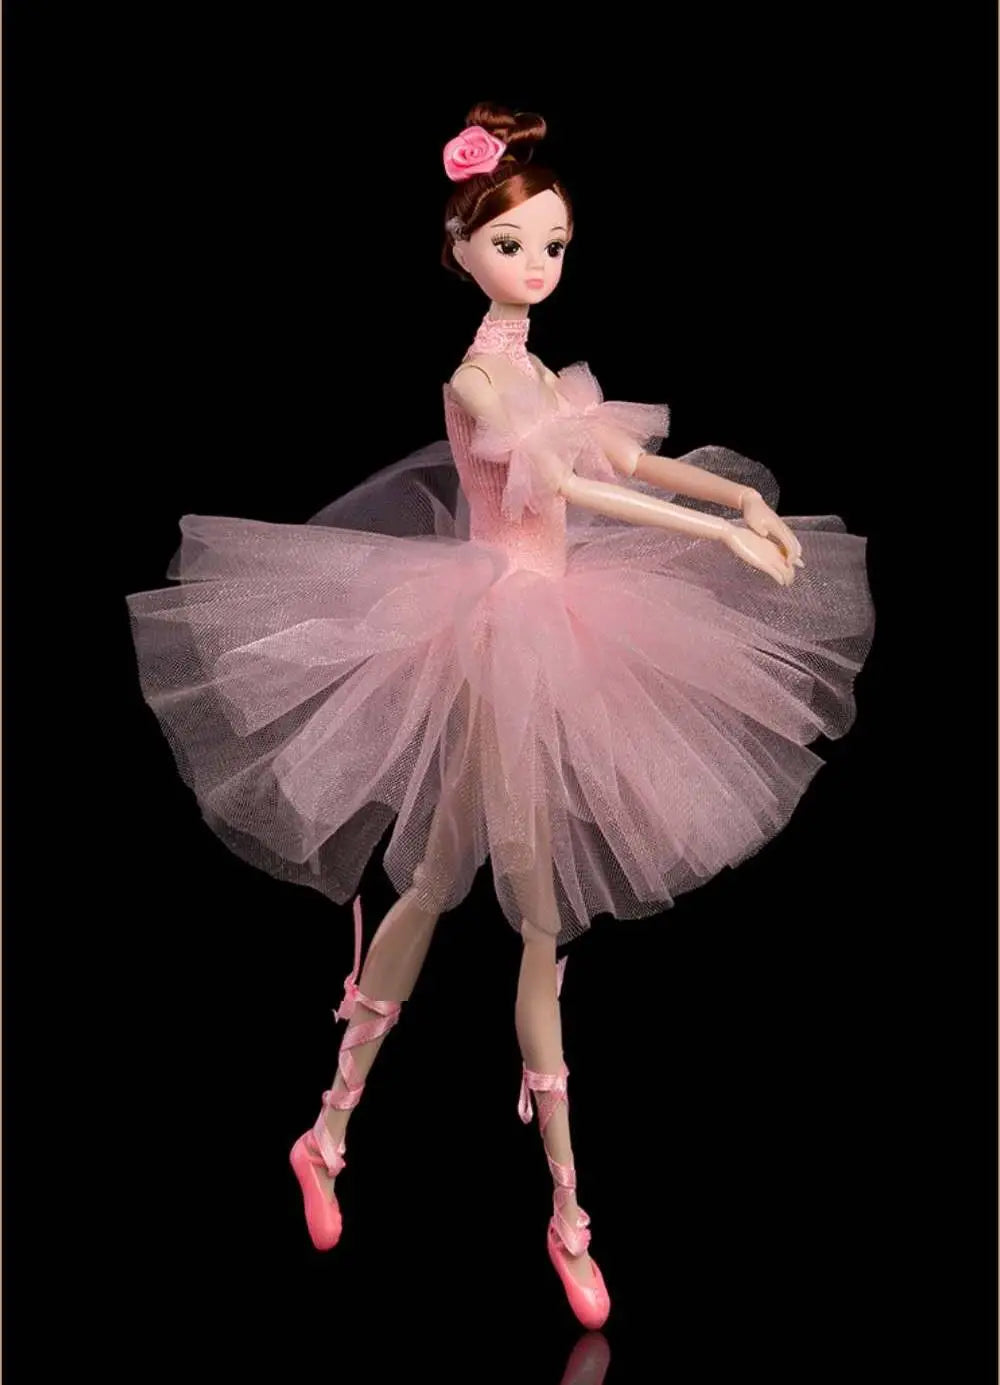 Die Sora Ballerina Puppe